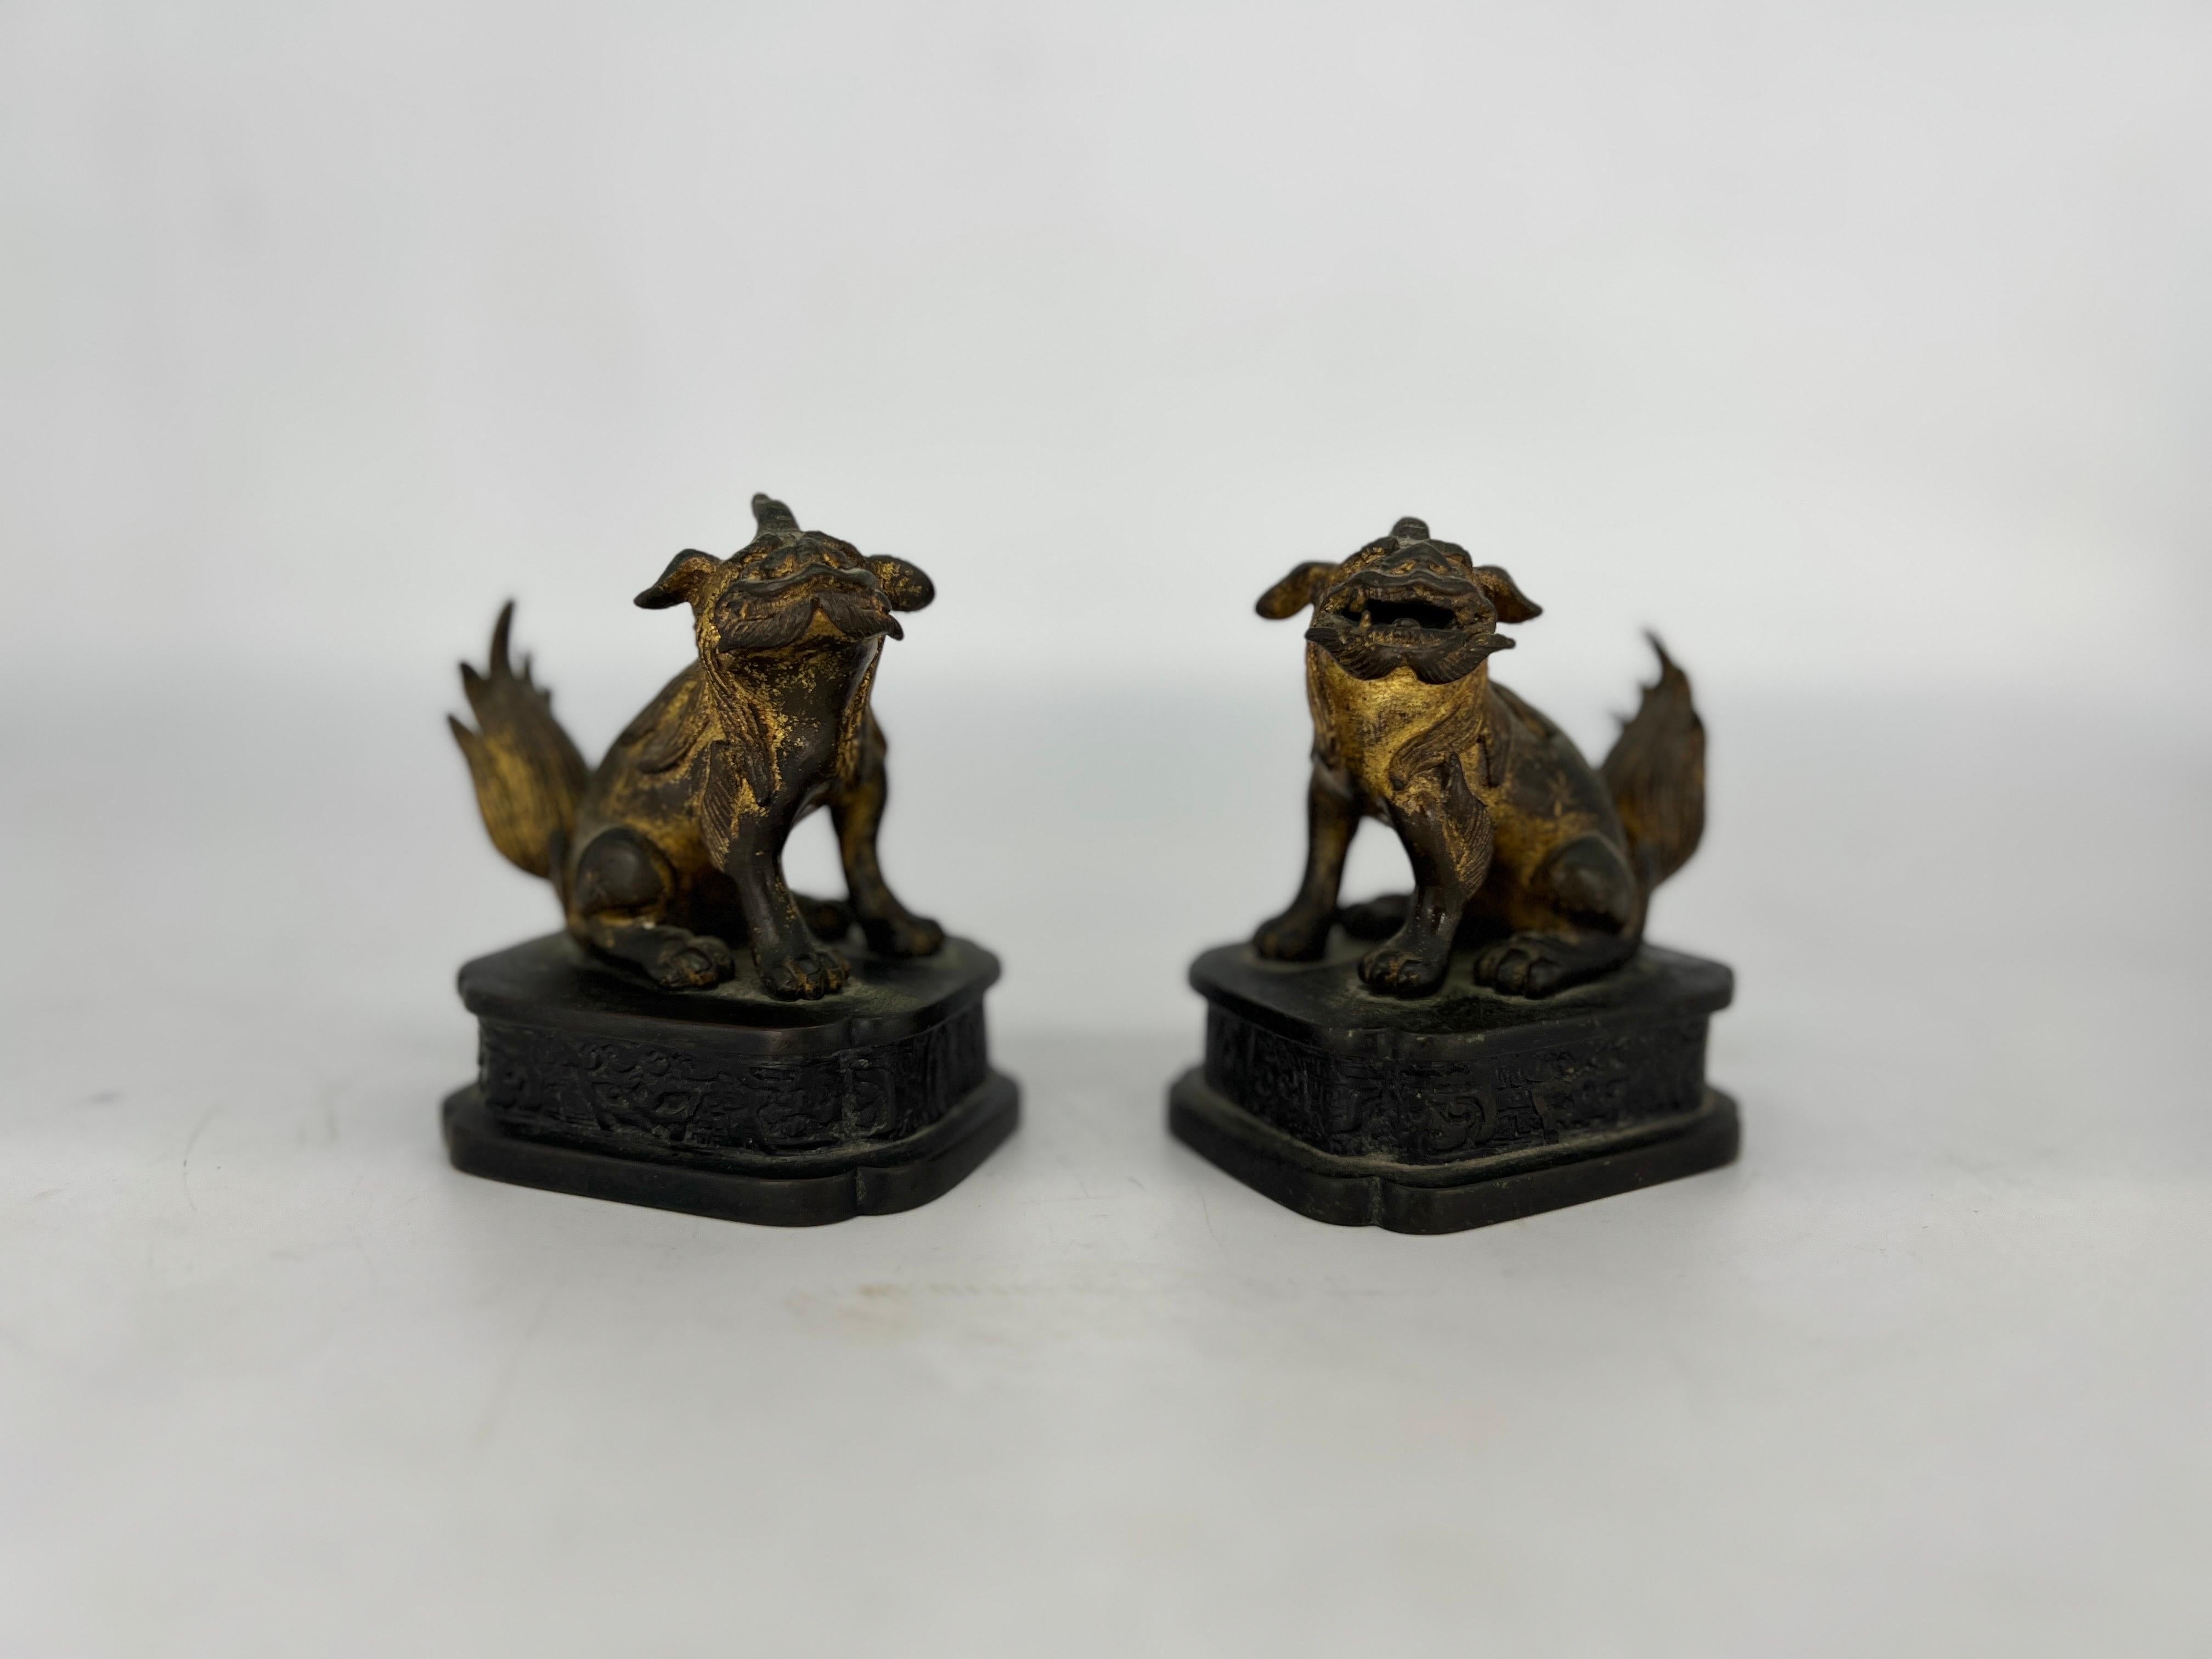 Chinois, dynastie Ming. 
Paire de chiens de chasse ou de lions gardiens chinois en bronze doré de la dynastie Ming, d'une qualité et d'un moulage extraordinaires. Provenant d'une importante Collection New York. 

